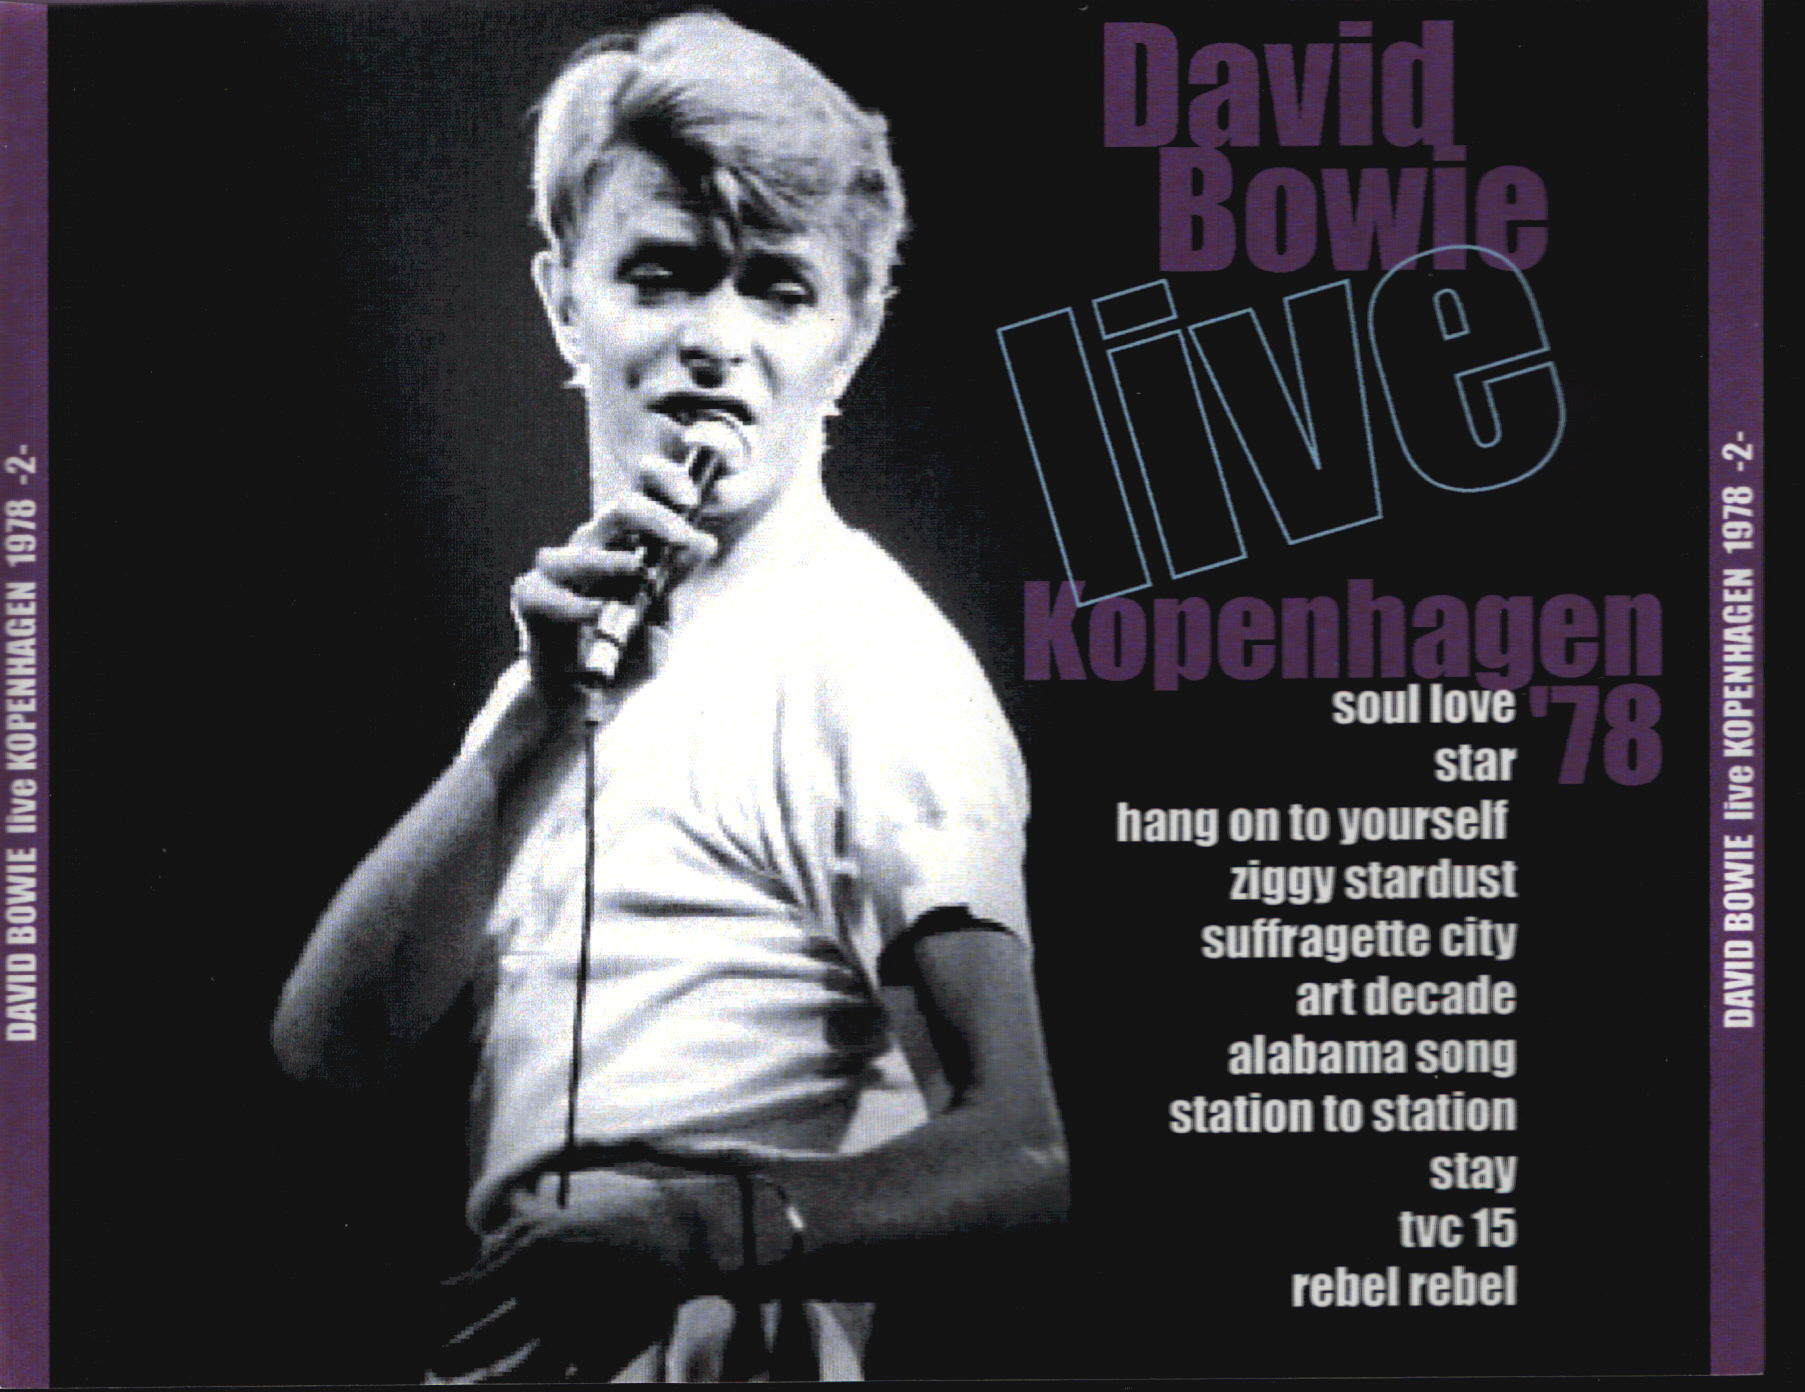  DAVID-BOWIE-copenhagen_live_kopenhagen_1978_disc_2_back